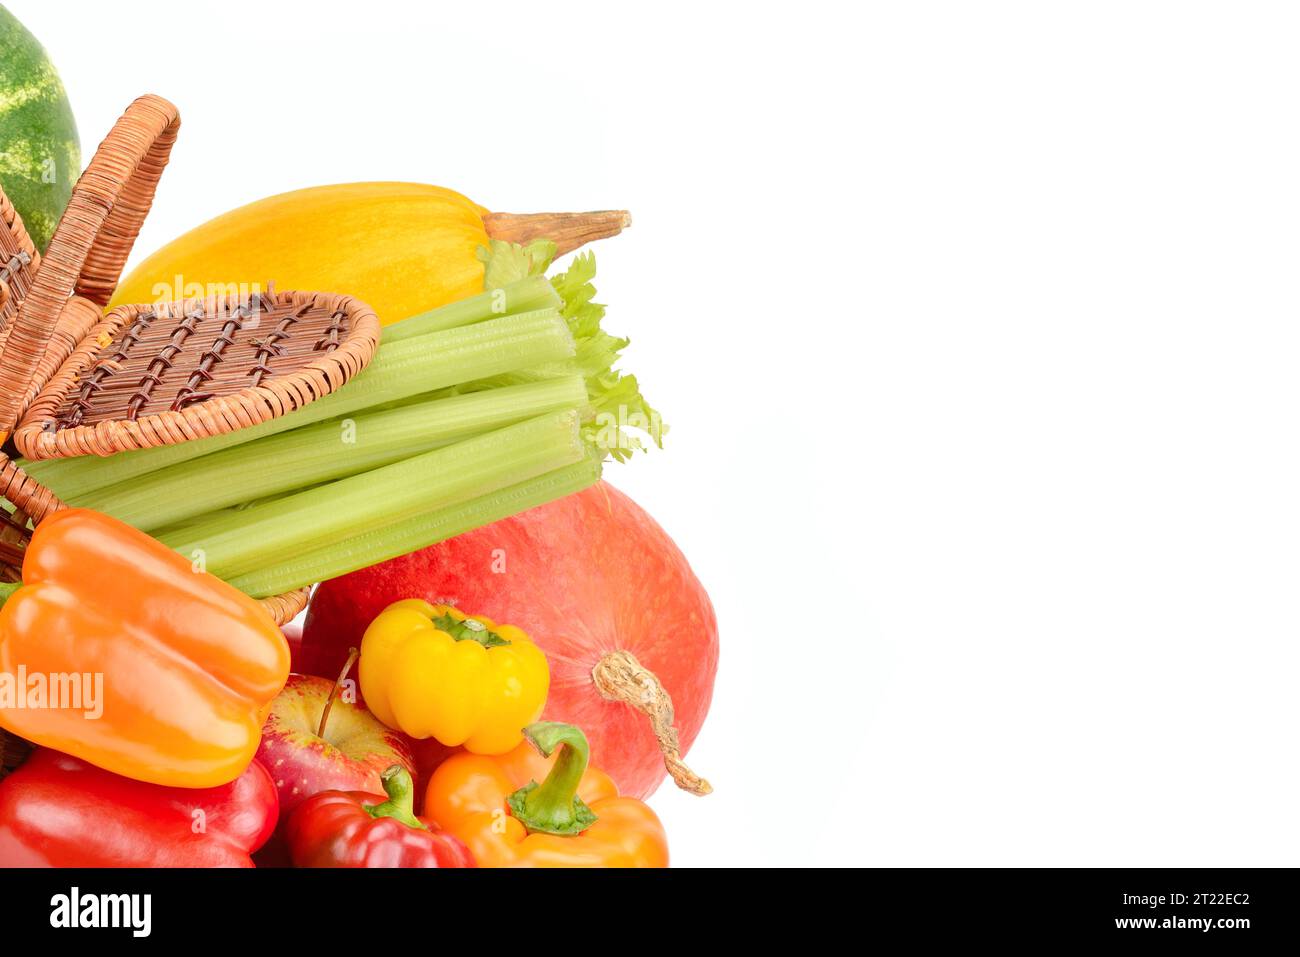 Ensemble de légumes et de fruits dans un panier en osier isolé sur fond blanc. Aliments sains biologiques. Espace libre pour le texte. Banque D'Images